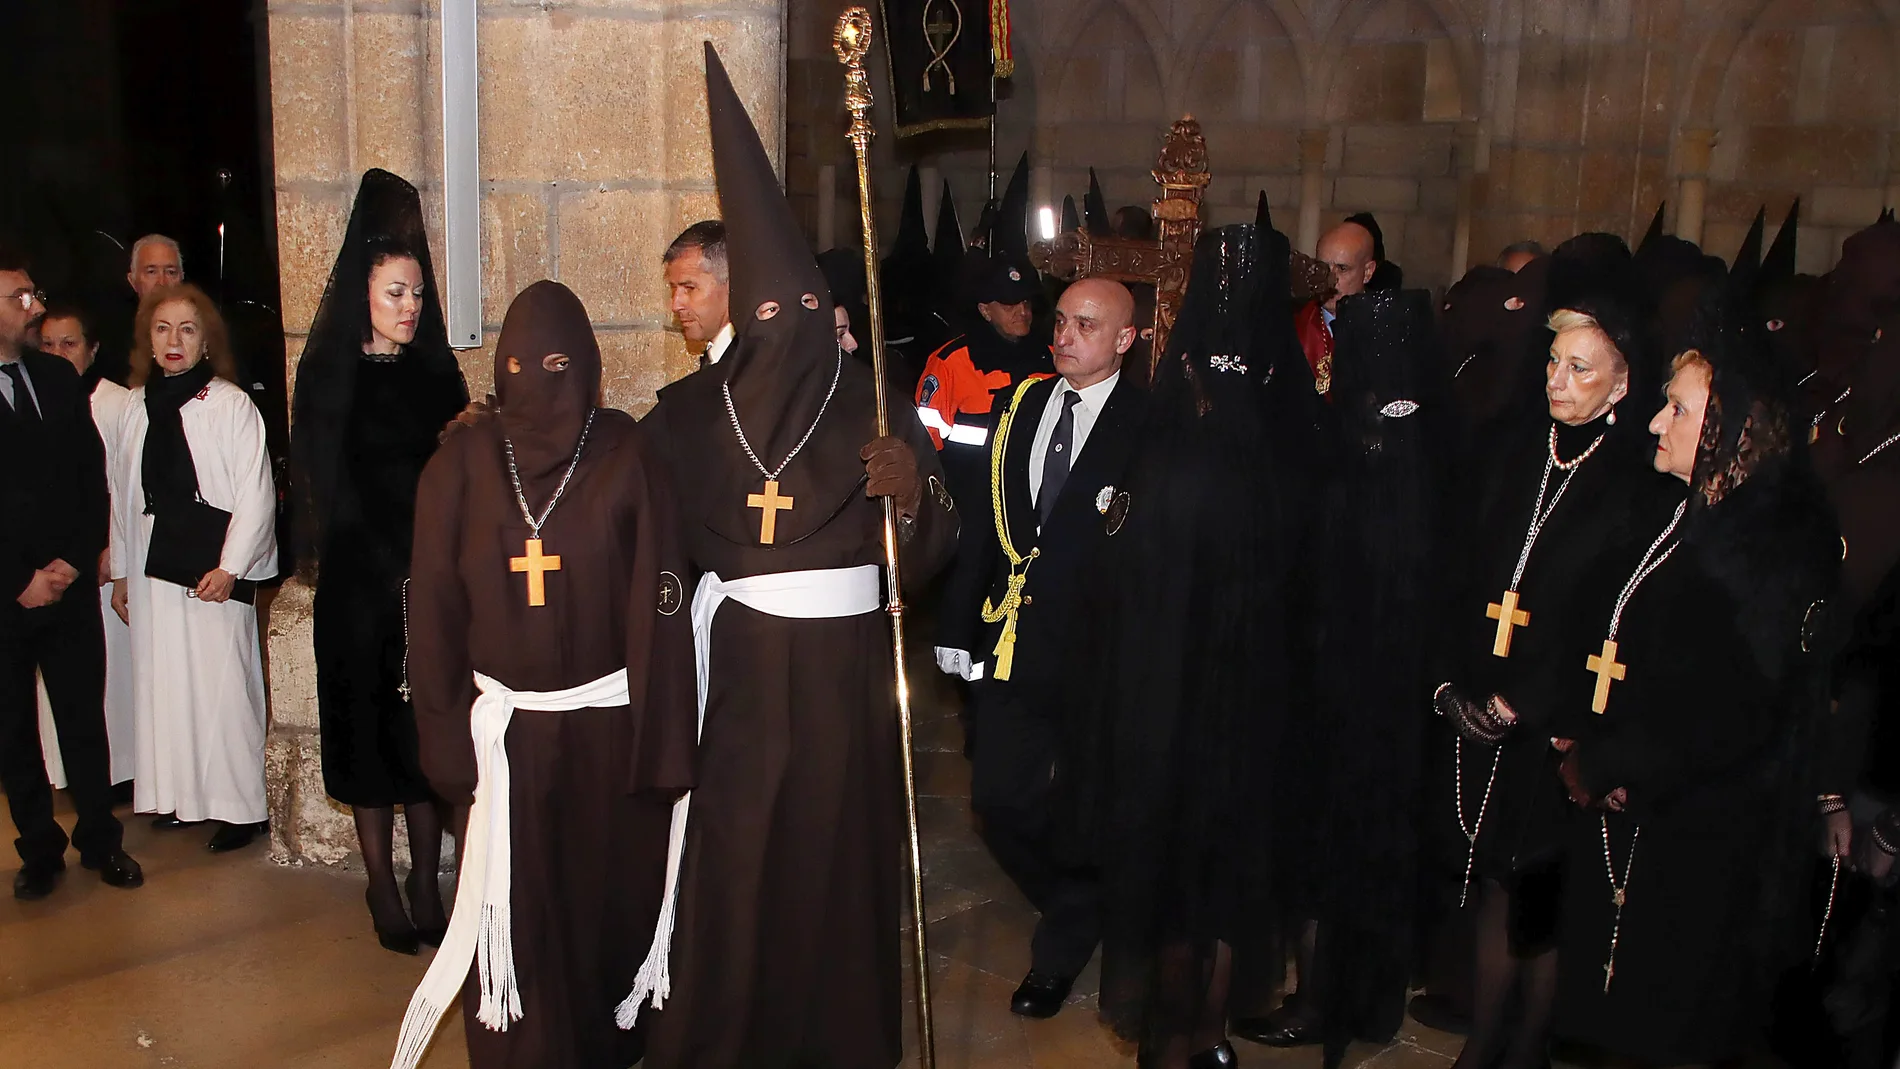 La interna O. M. R. es llevada al Locus Apellationis, en la Catedral de León